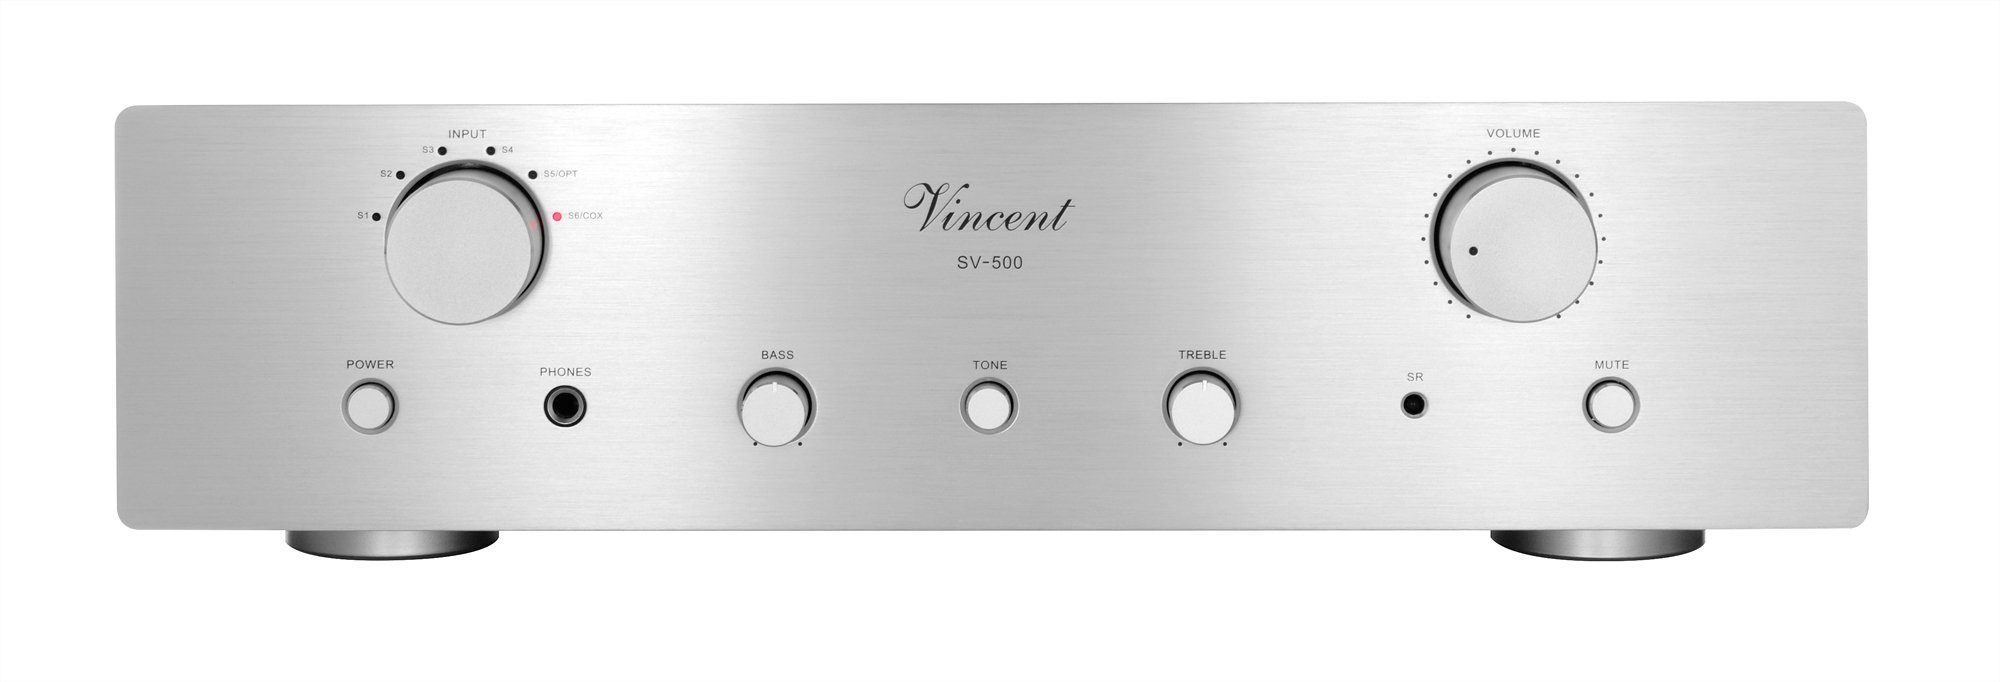 Vincent SV-500 Vollverstärker (160 W, Stereo-Verstärker mit Hybrid-Technik aus Röhren und Transistoren) Silber